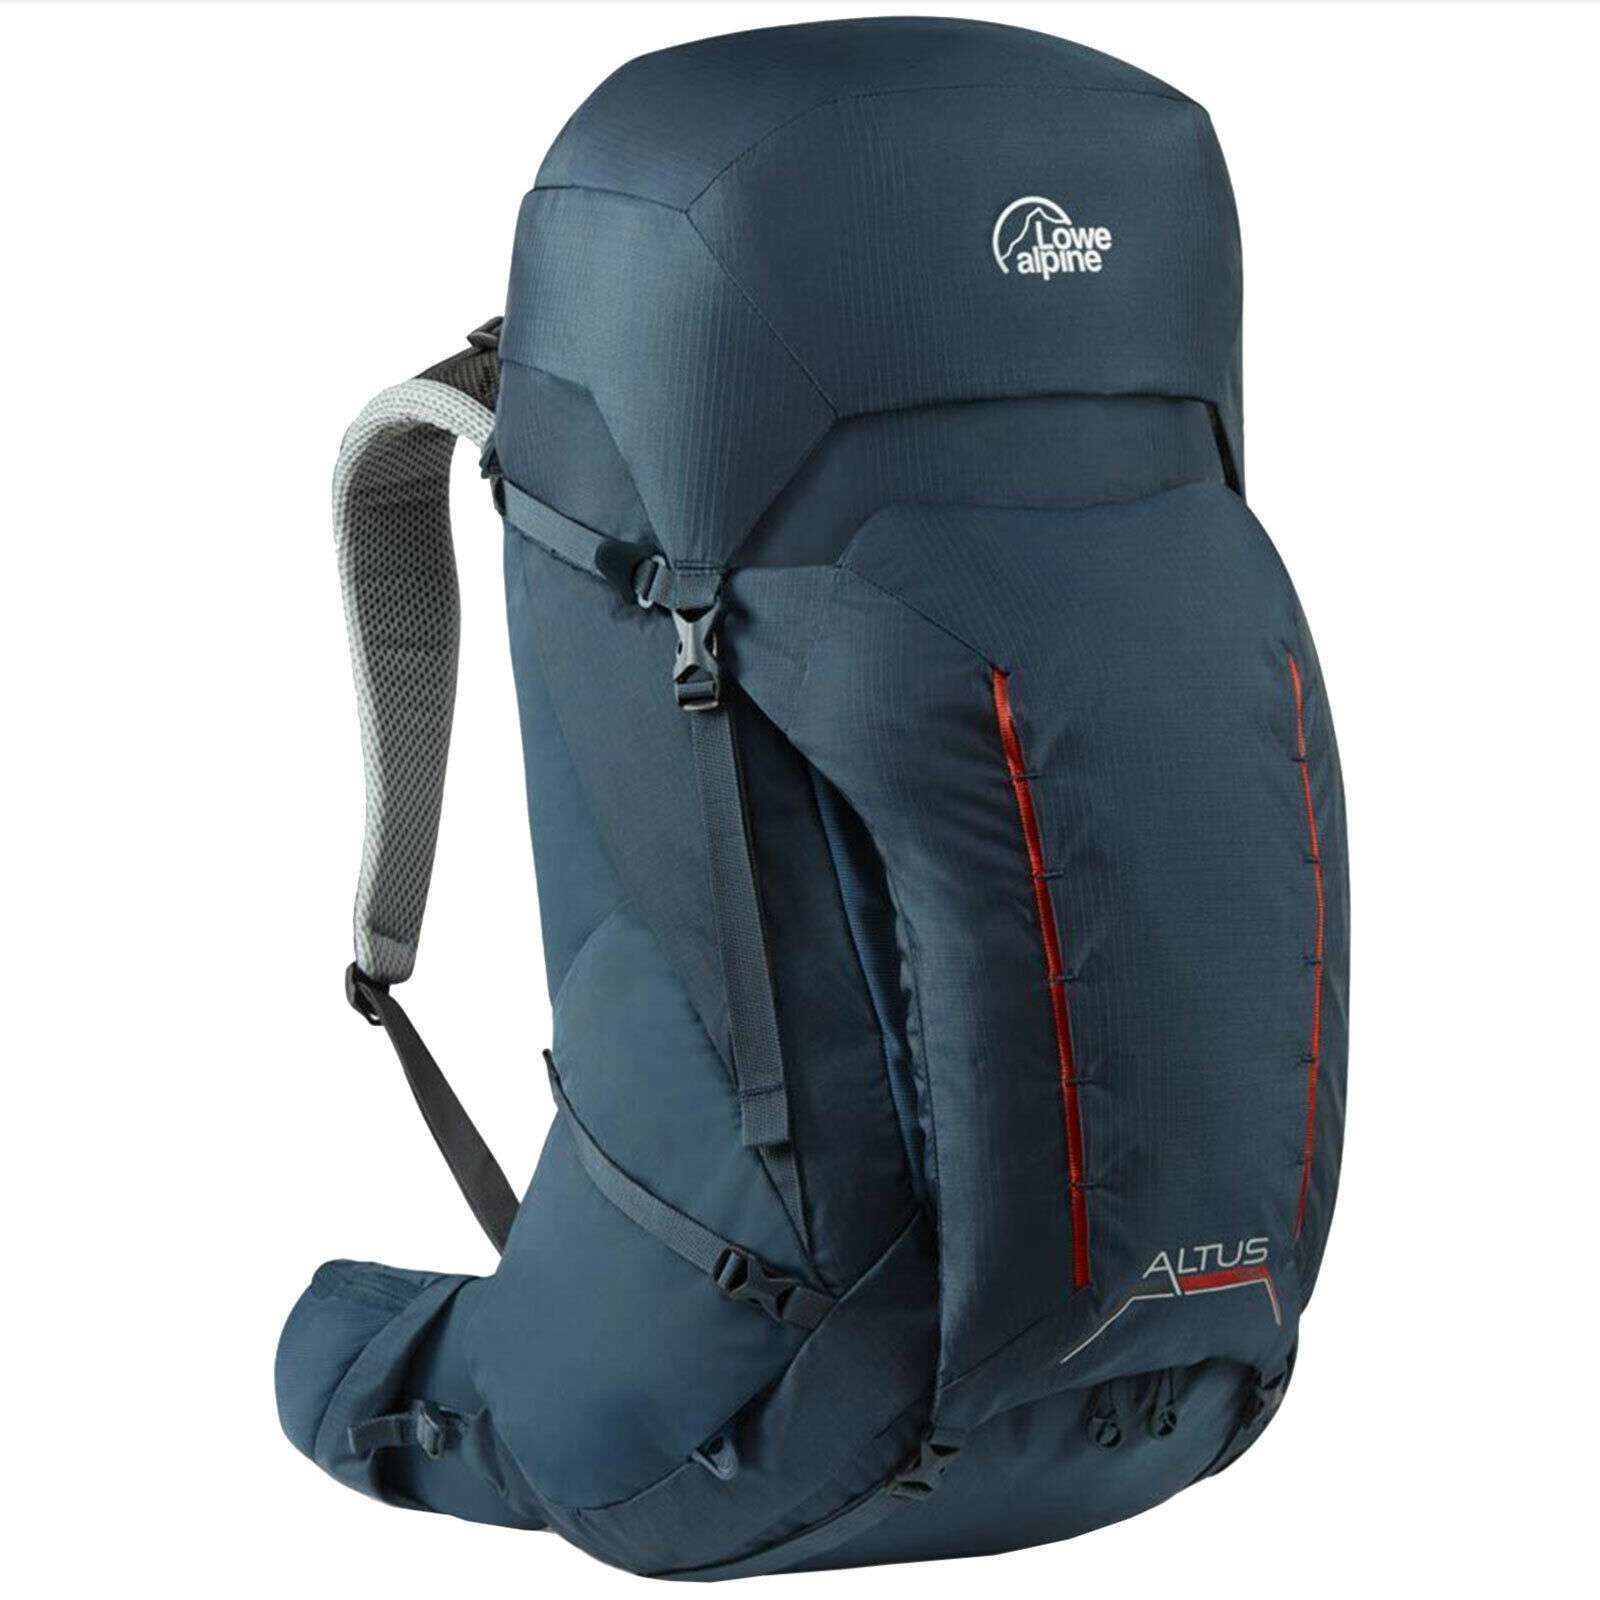 Lowe Alpine Altus Backpack Zaino da Trekking Nuovo